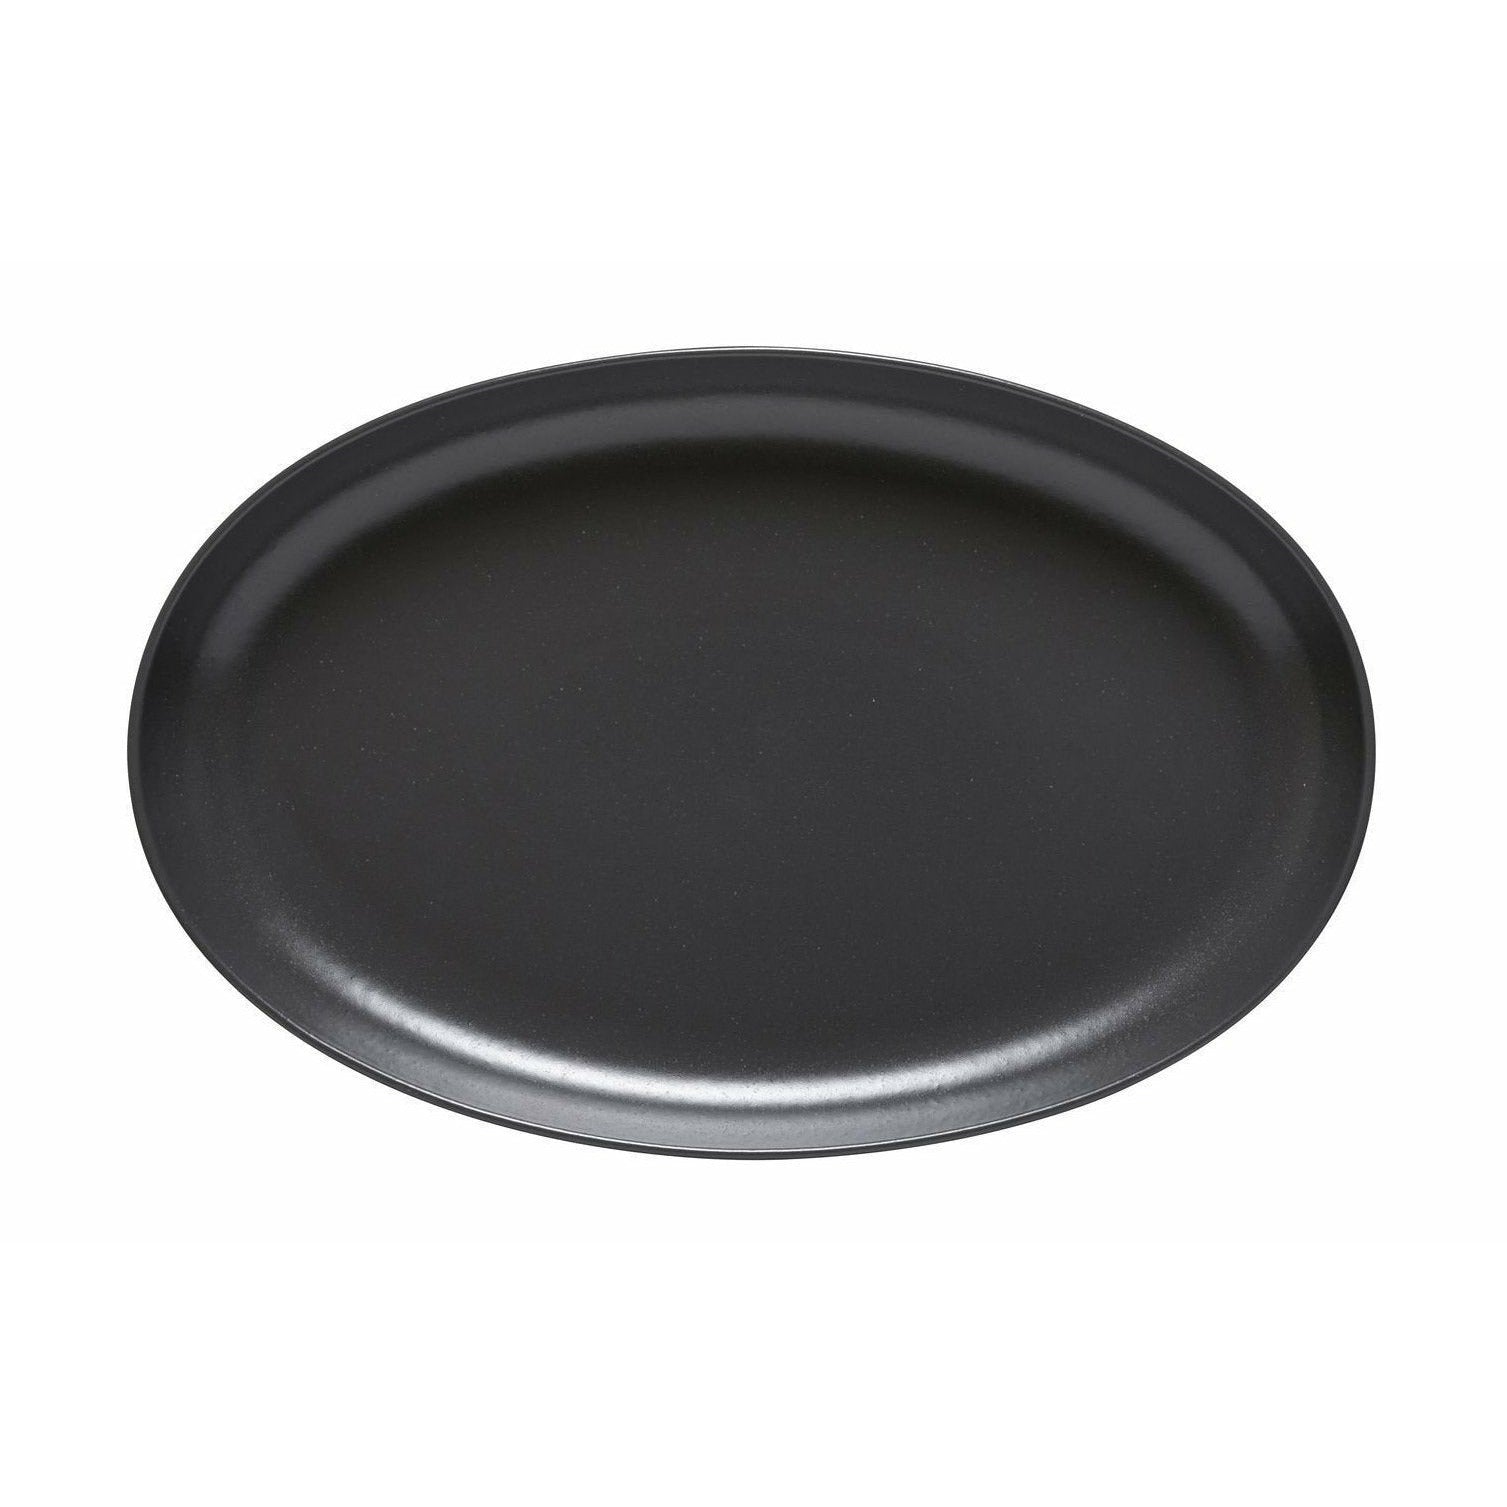 Casafina Oval serveringsrätt, mörkgrå